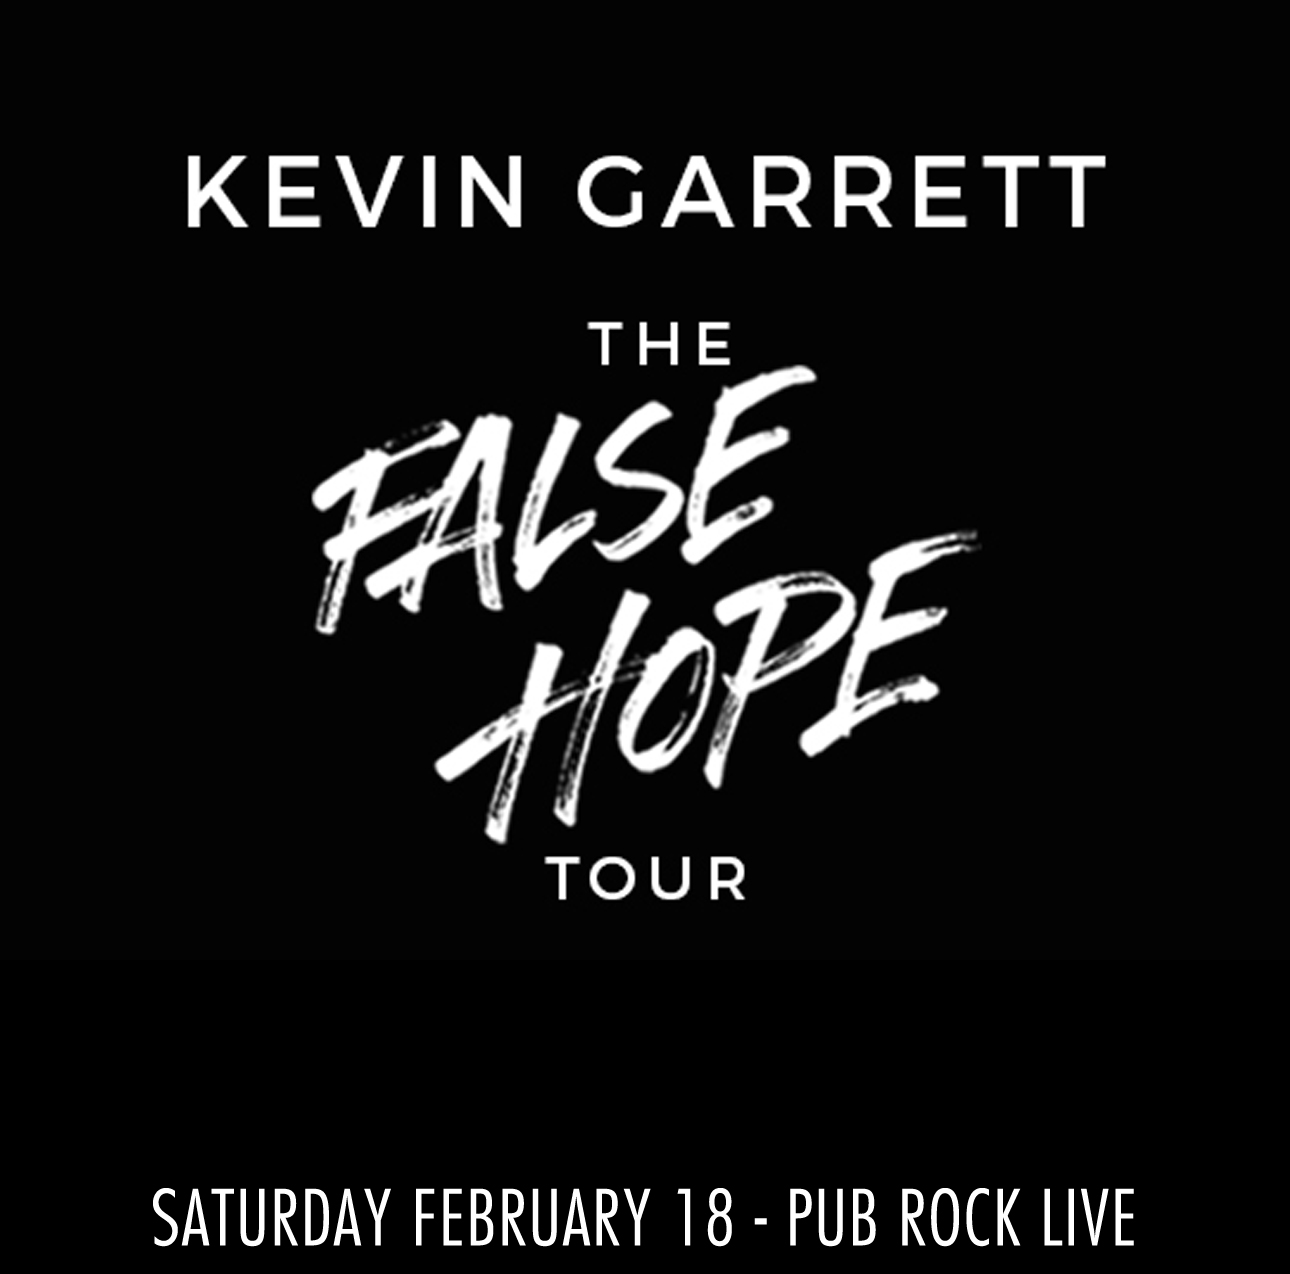 Win tickets to KEVIN GARRETT live at Pub Rock